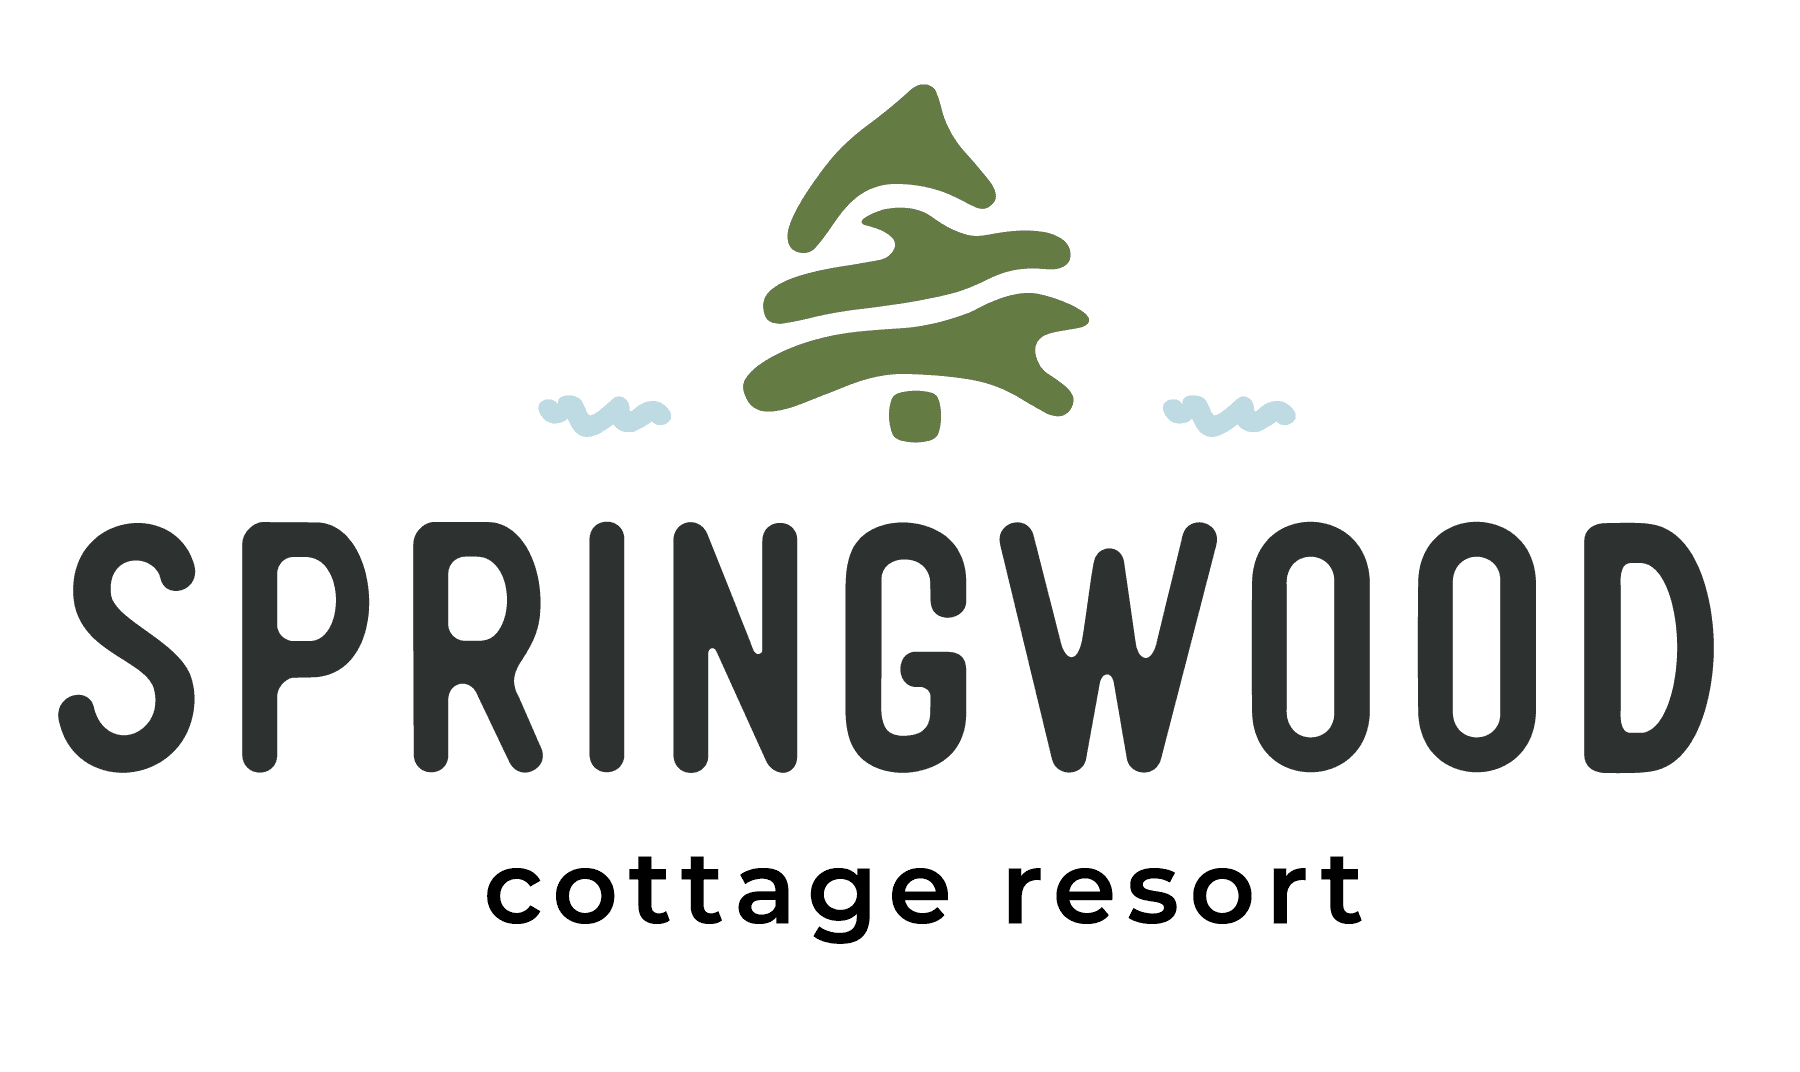 The Springwood Cottage Resort logo.